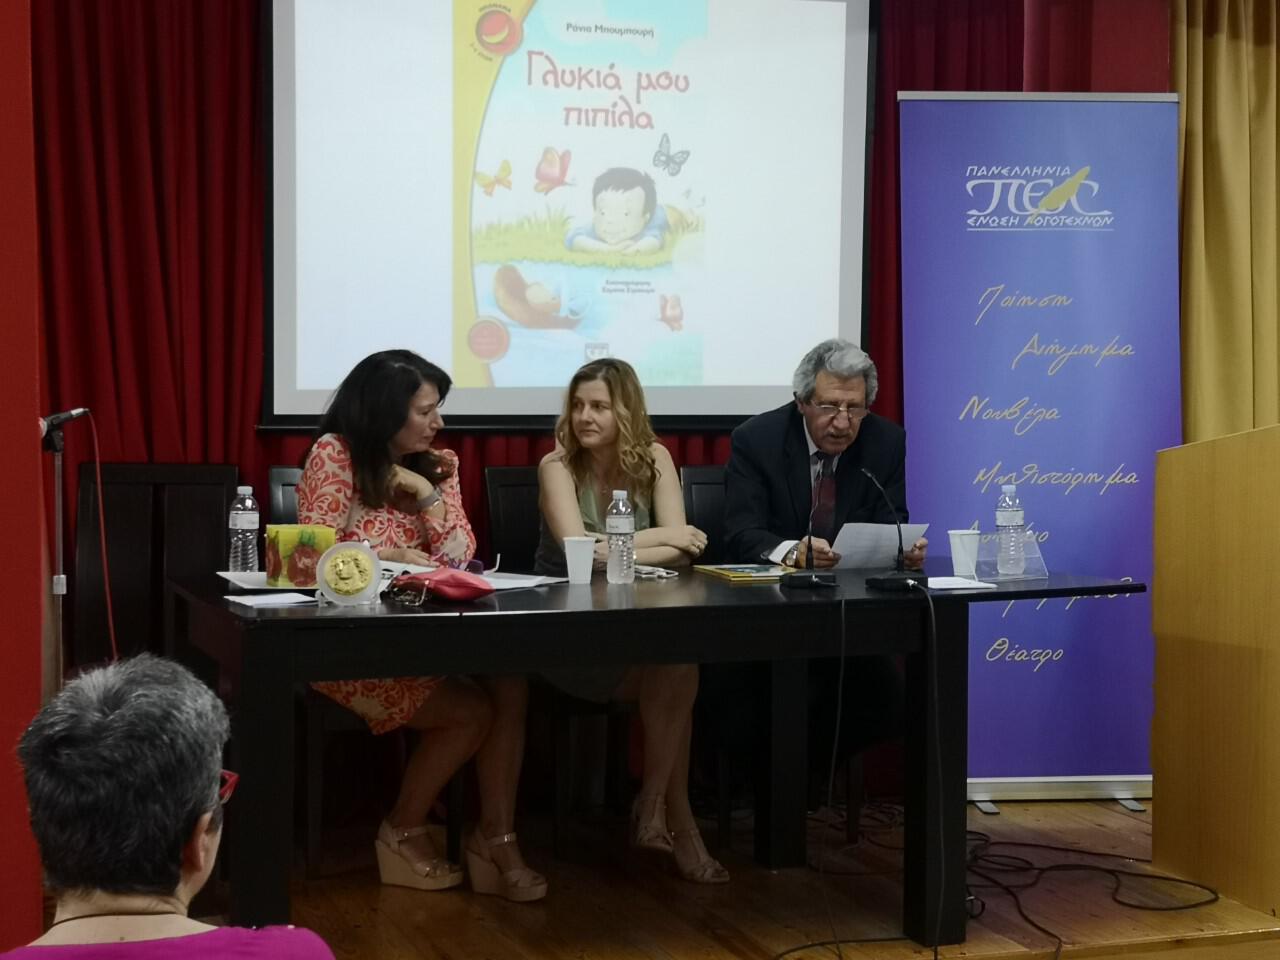 03/06/2019, Στην Πανελλήνια Ένωση Λογοτεχνών, παρουσίαση για το συνολικό έργο της Ράνια Μπουμπουρή. Ομιλητής και ο λογοτέχνης Λάμπρος Ηλίας.